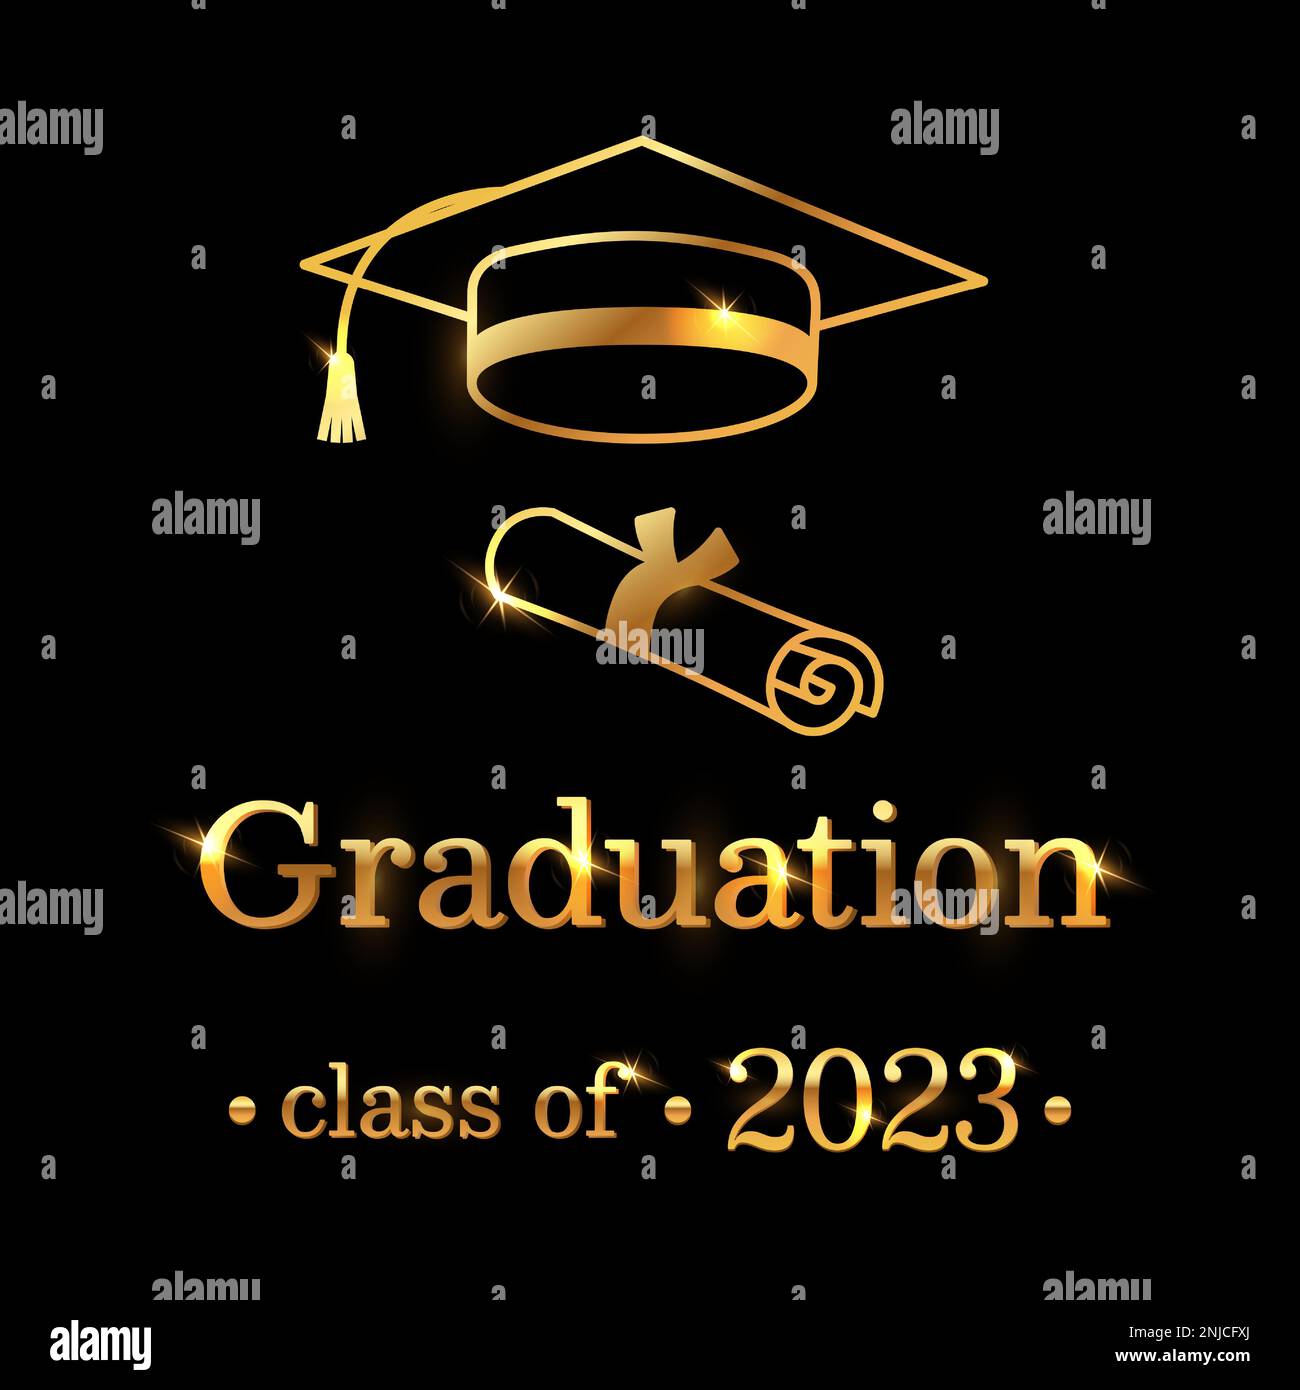 Célébrez la réussite du diplômé avec cette élégante carte noire ornée d'une casquette de remise des diplômes dorée, d'un certificat et d'un message sincère. Vecteur illust Illustration de Vecteur